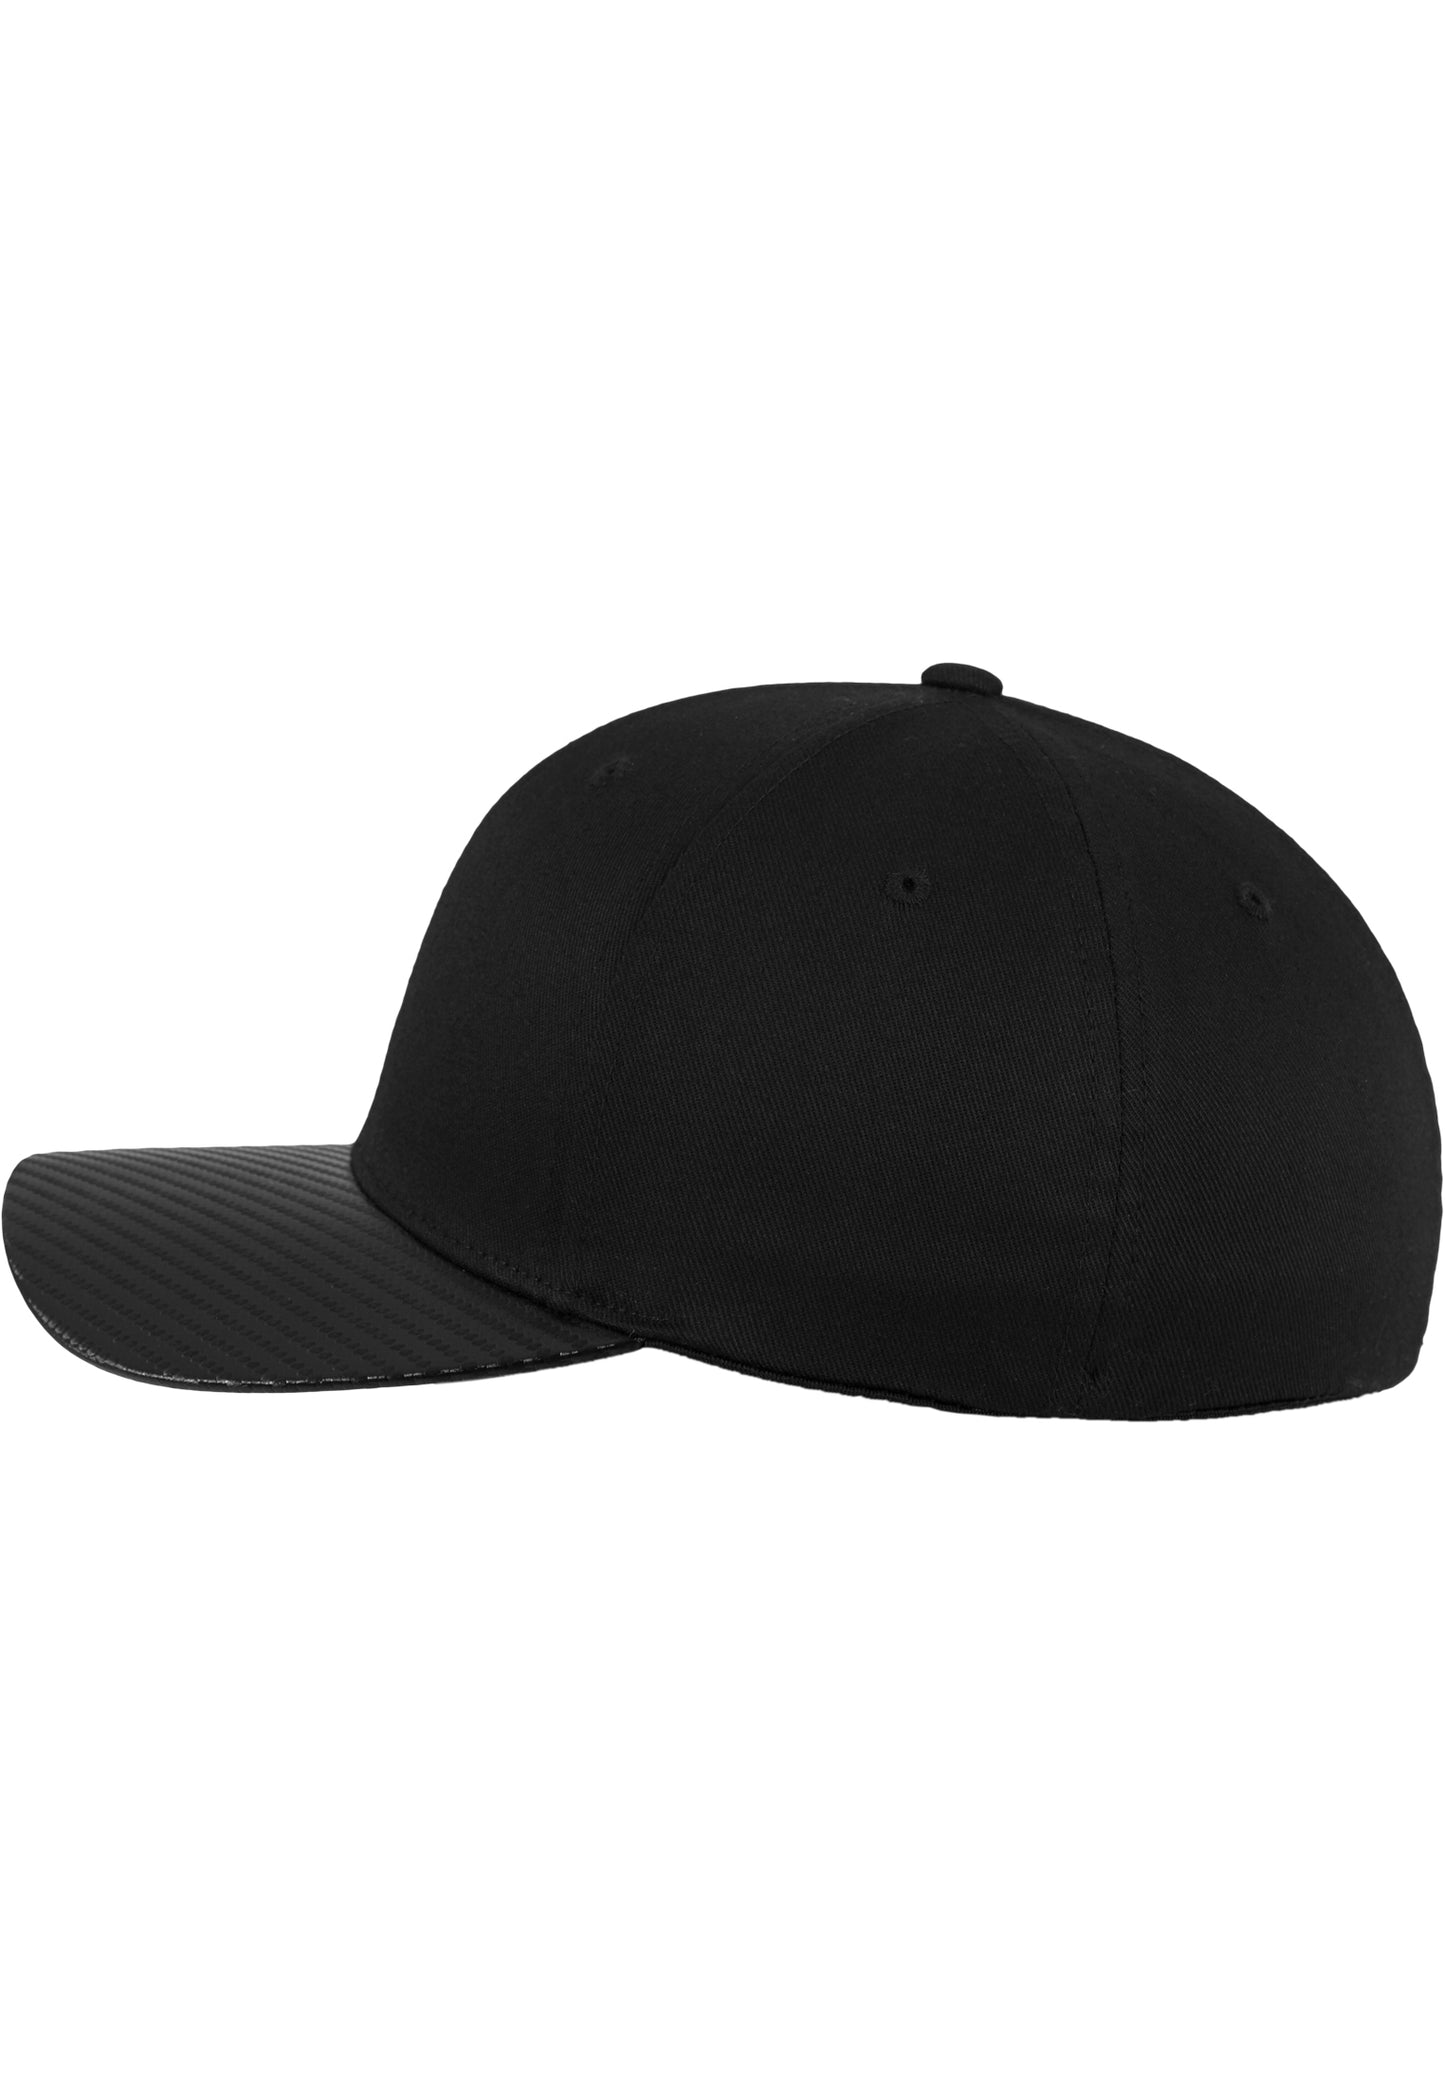 Flexfit Cap - Carbon - Black - Headz Up 